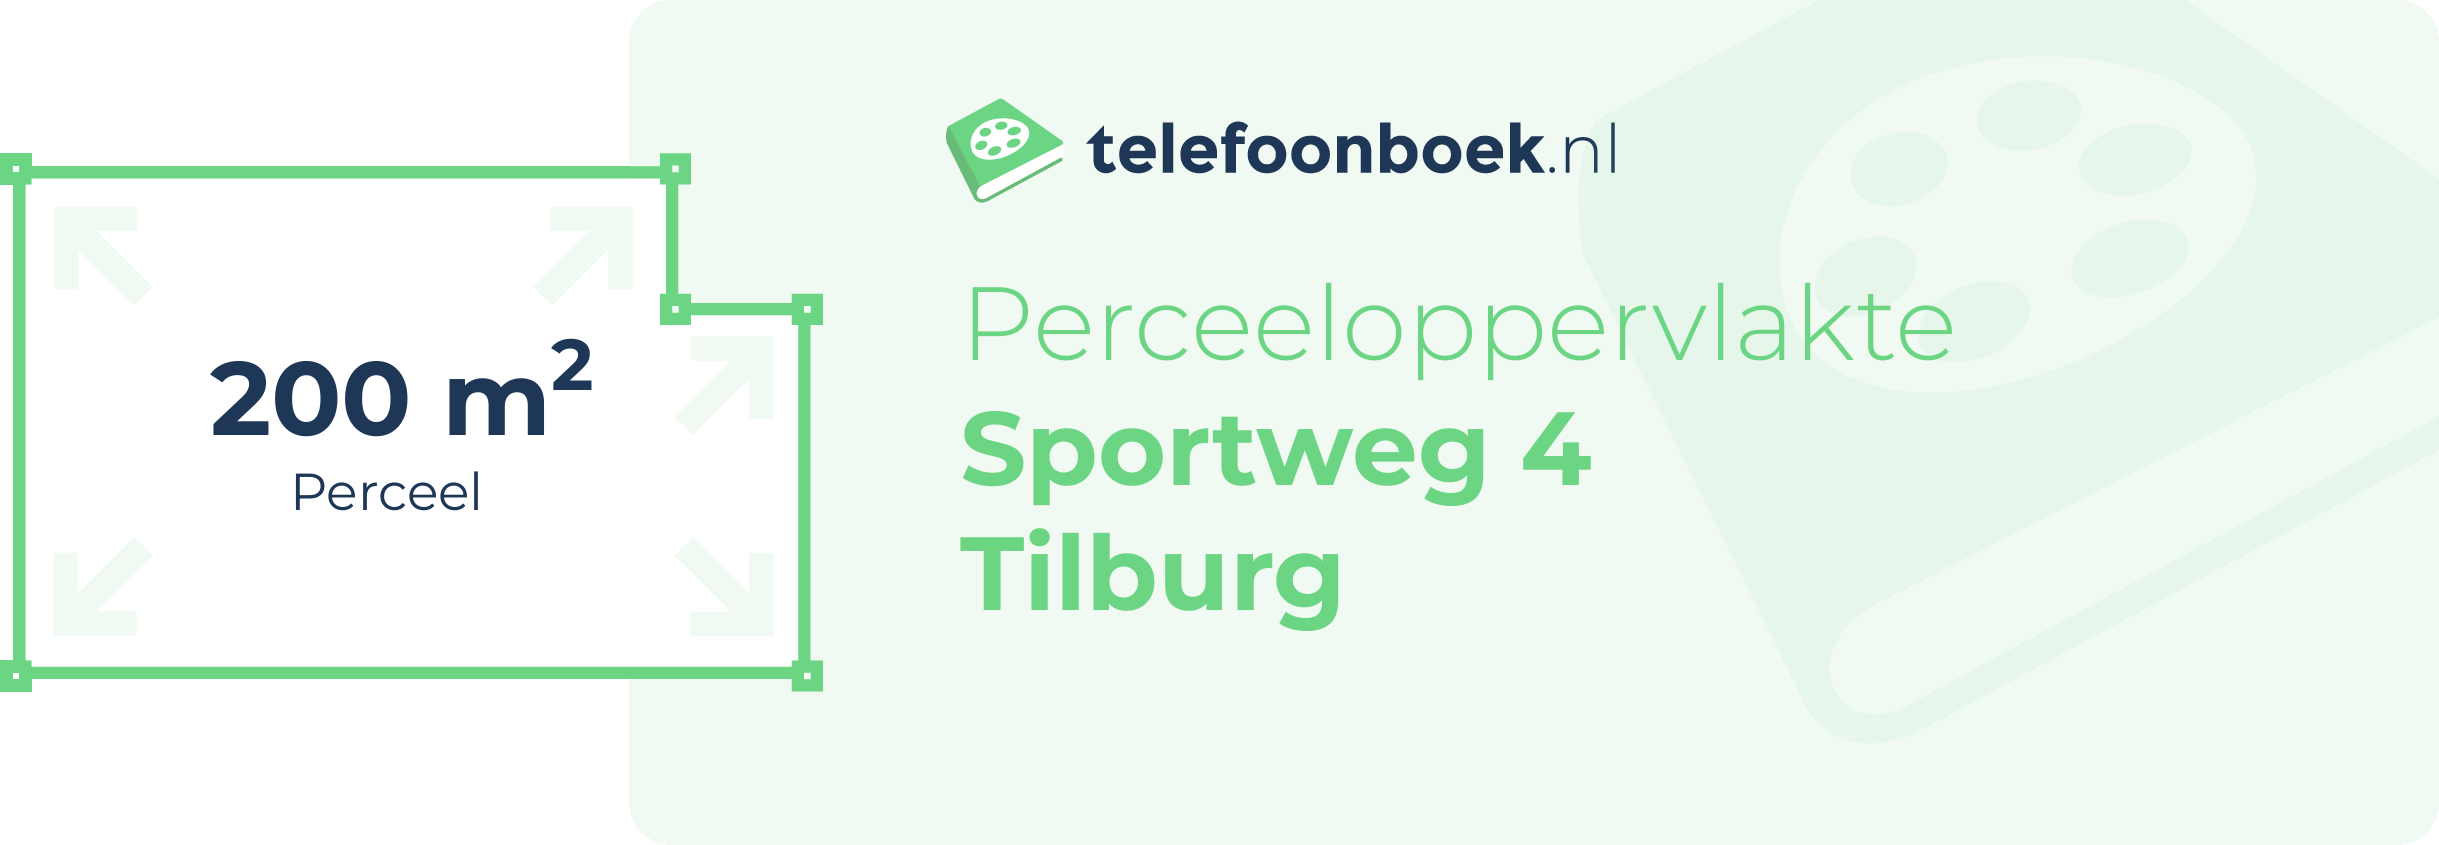 Perceeloppervlakte Sportweg 4 Tilburg